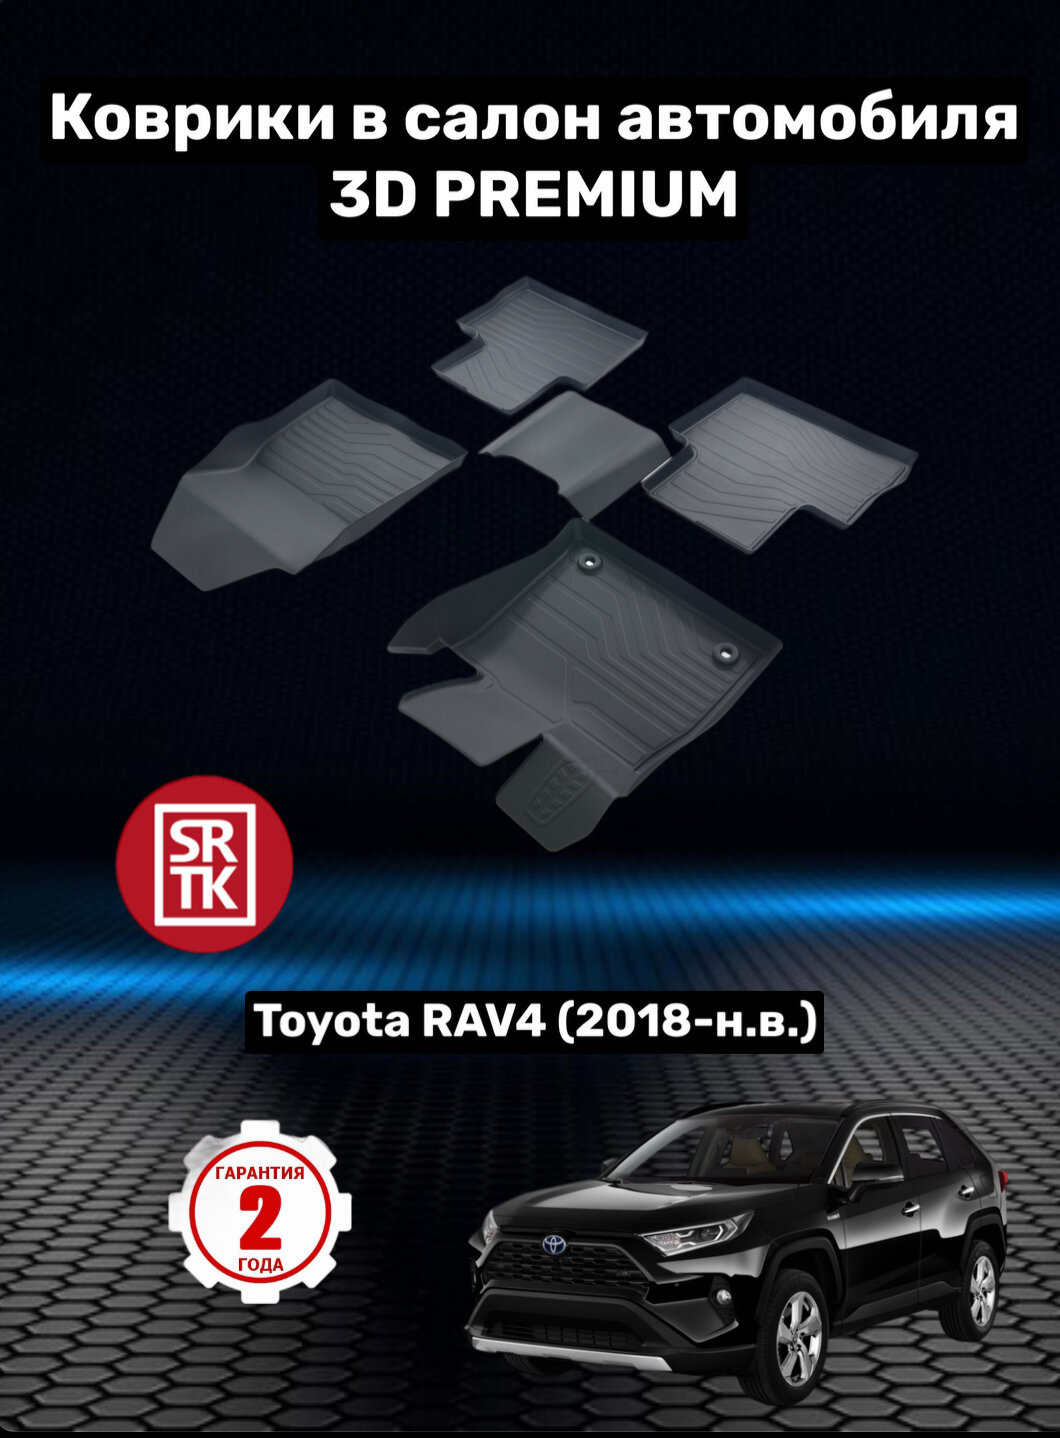 Коврики резиновые в салон для Тойота Рав 4/ Toyota Rav4 (2018-н. в.) 3D PREMIUM SRTK (Саранск) комплект в салон